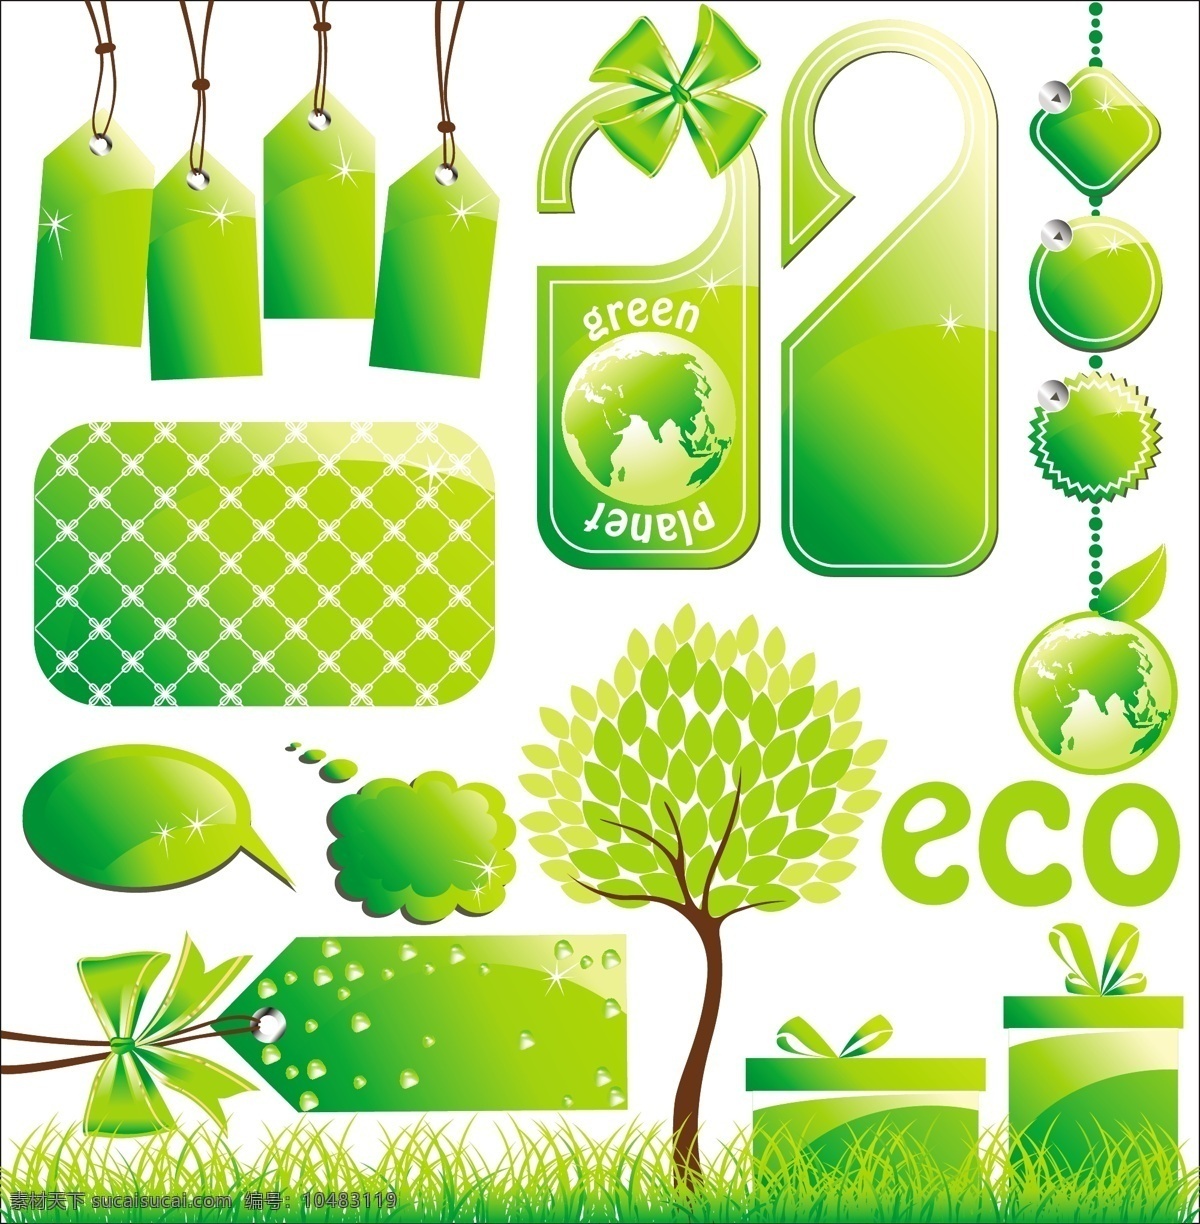 环保 低 碳 生活 主题 矢量 eps格式 标签 城市 低碳 垃圾箱 喇叭 绿色 汽车 矢量素材 树 小排量汽车 矢量图 其他矢量图